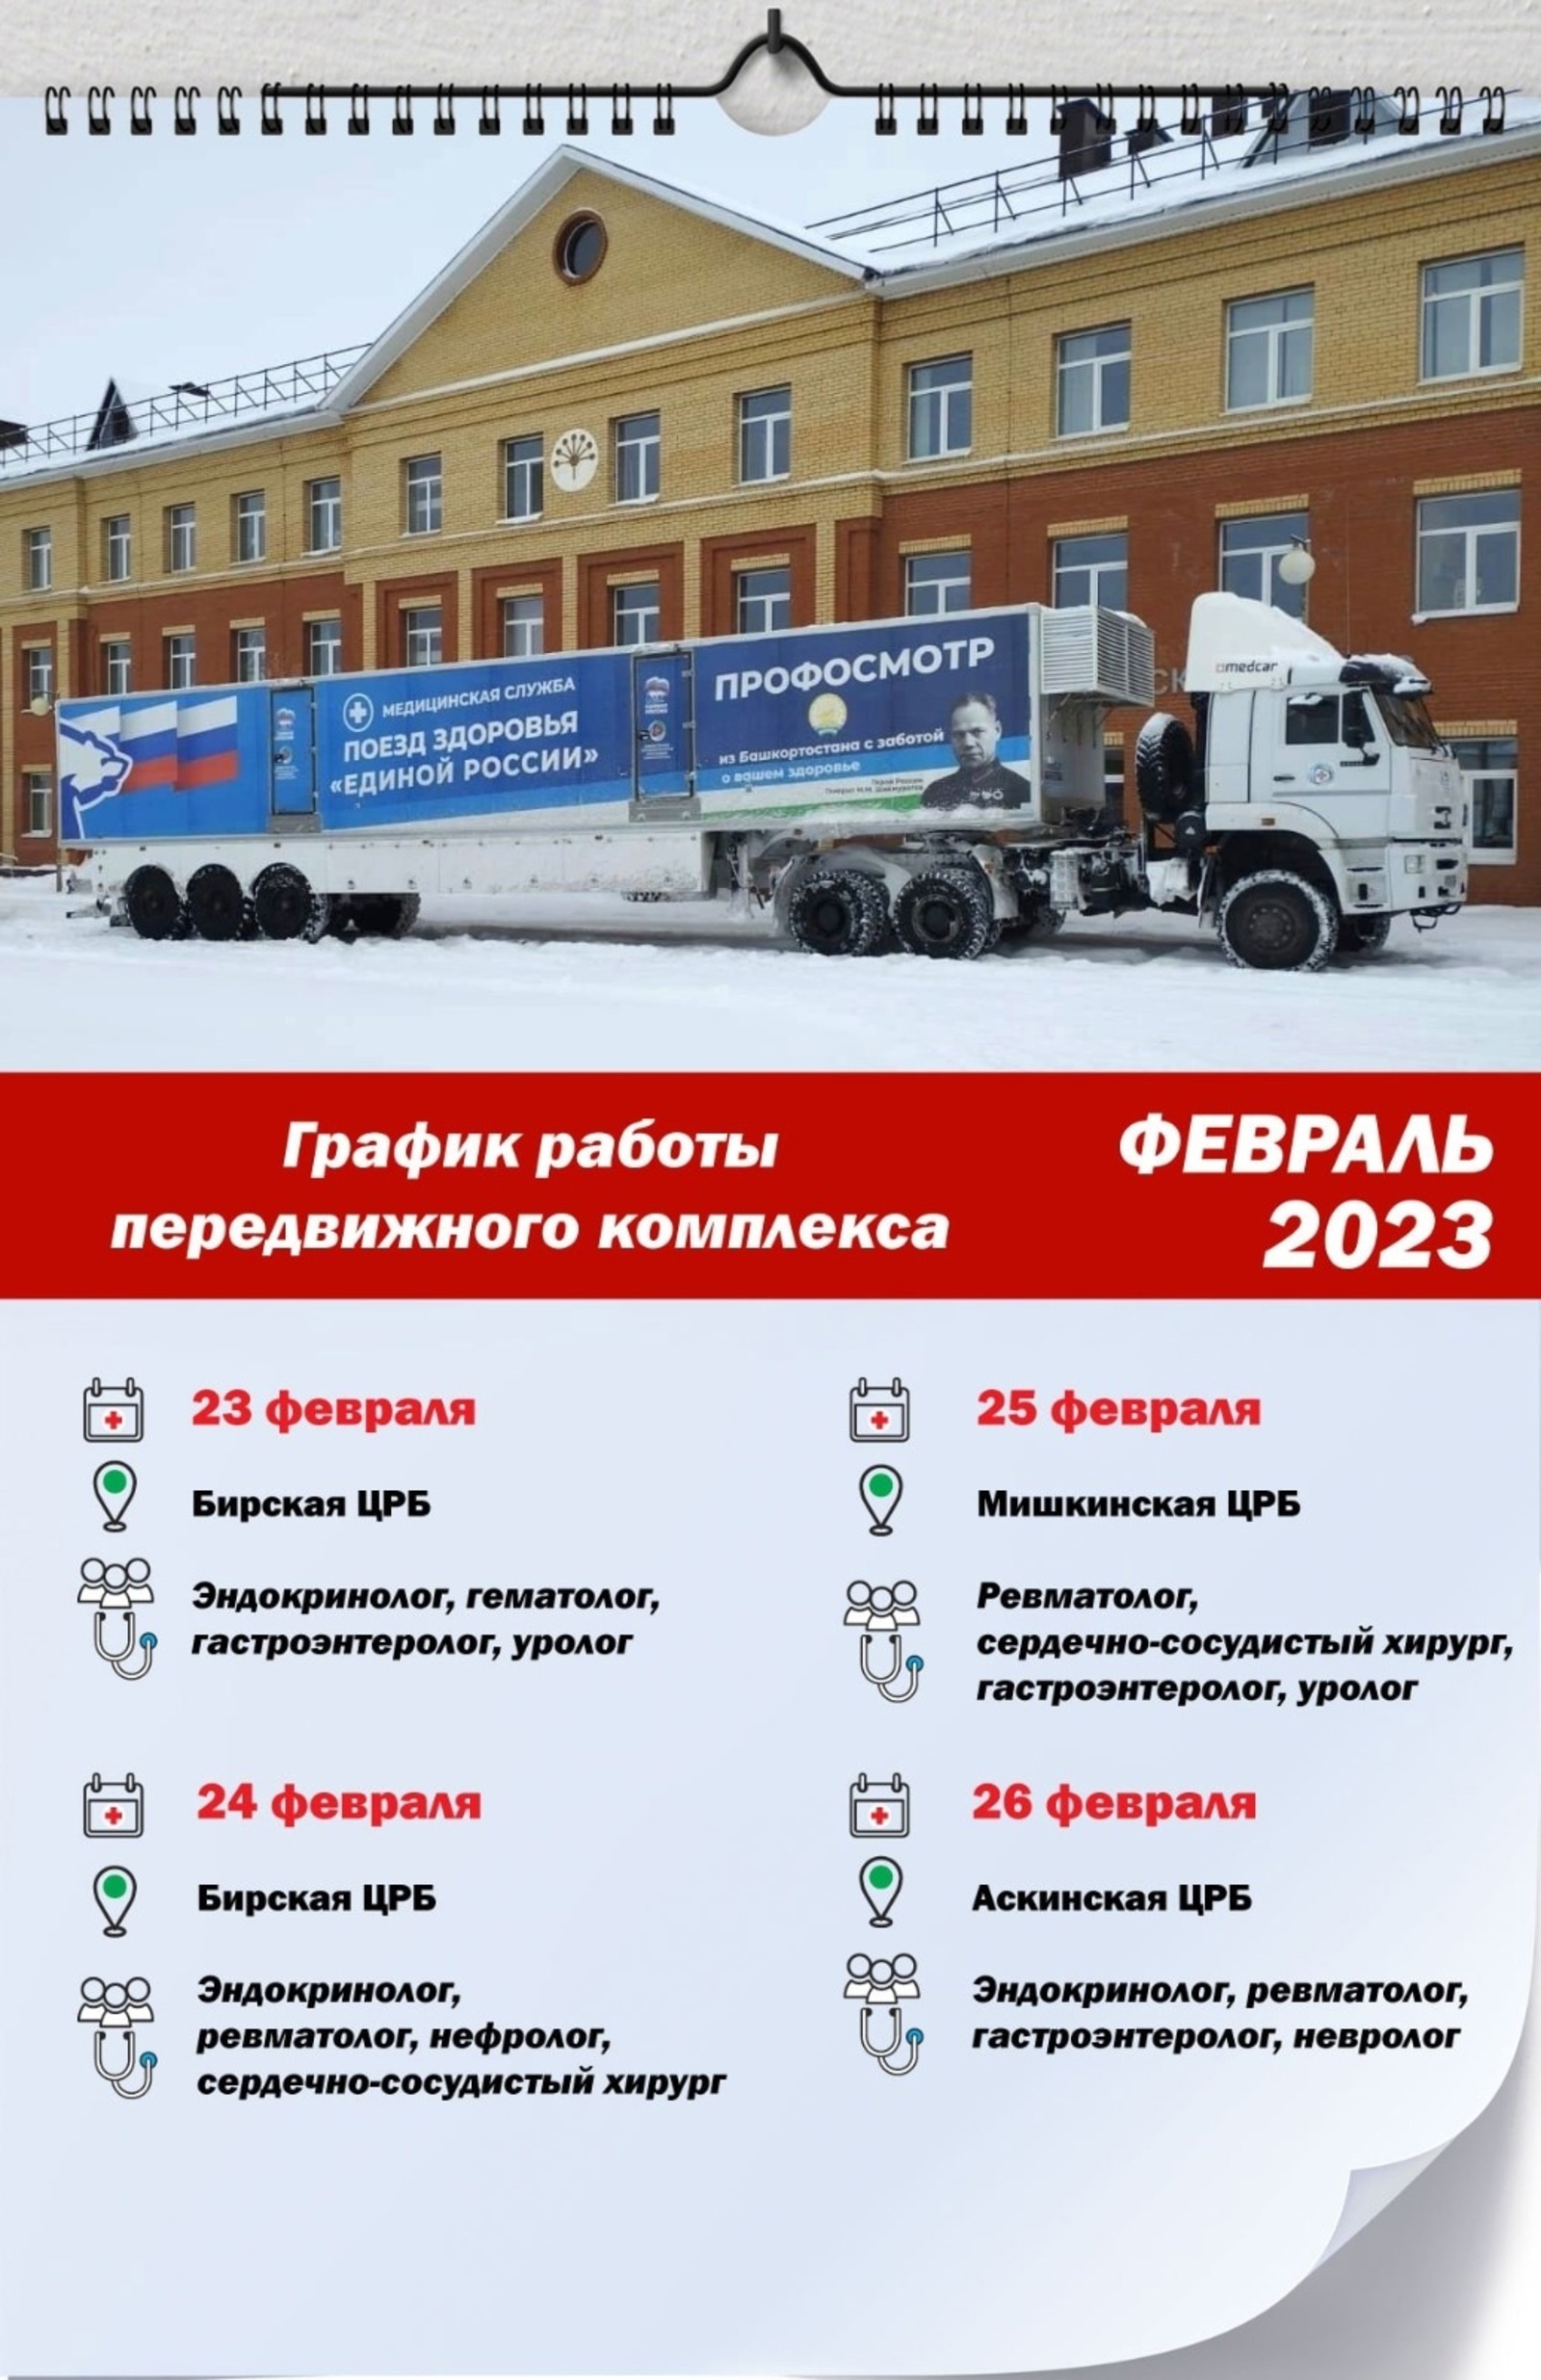 25 февраля в Мишкинскую ЦРБ приезжает передвижной комплекс РКБ им. Куватова